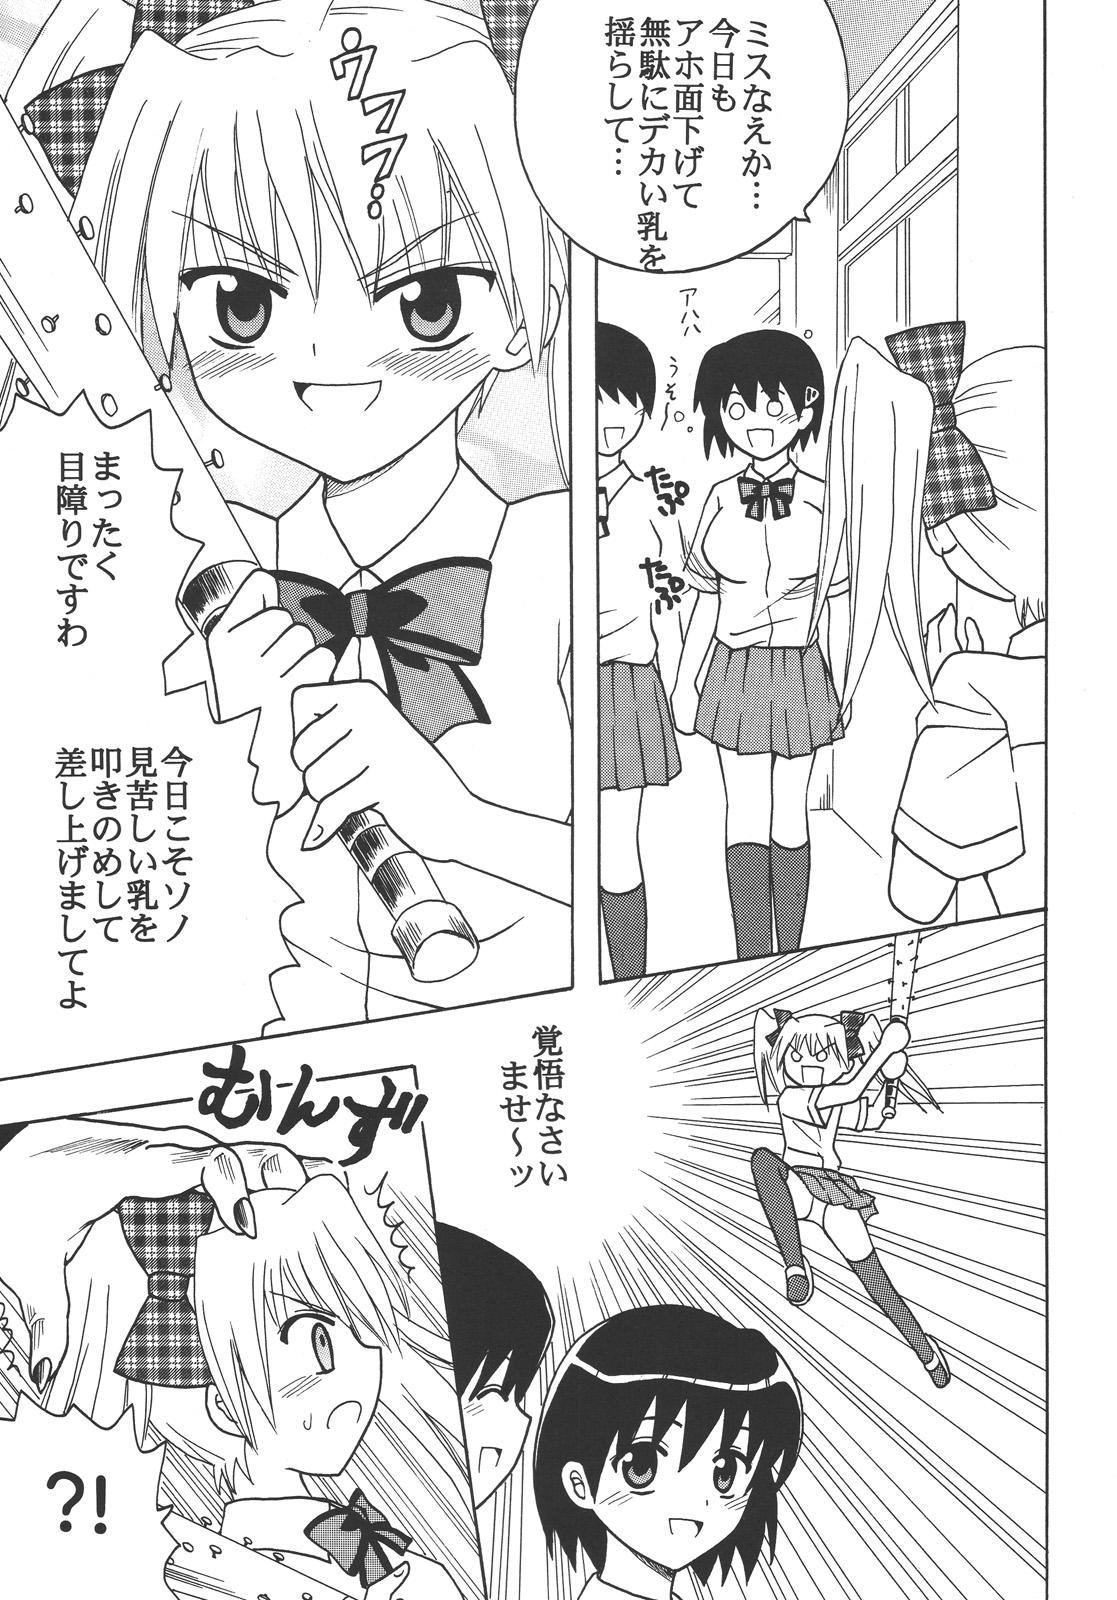 Cam Sex Nakadashi Maid no Hinkaku 3 - Kamen no maid guy Amateur Sex - Page 4